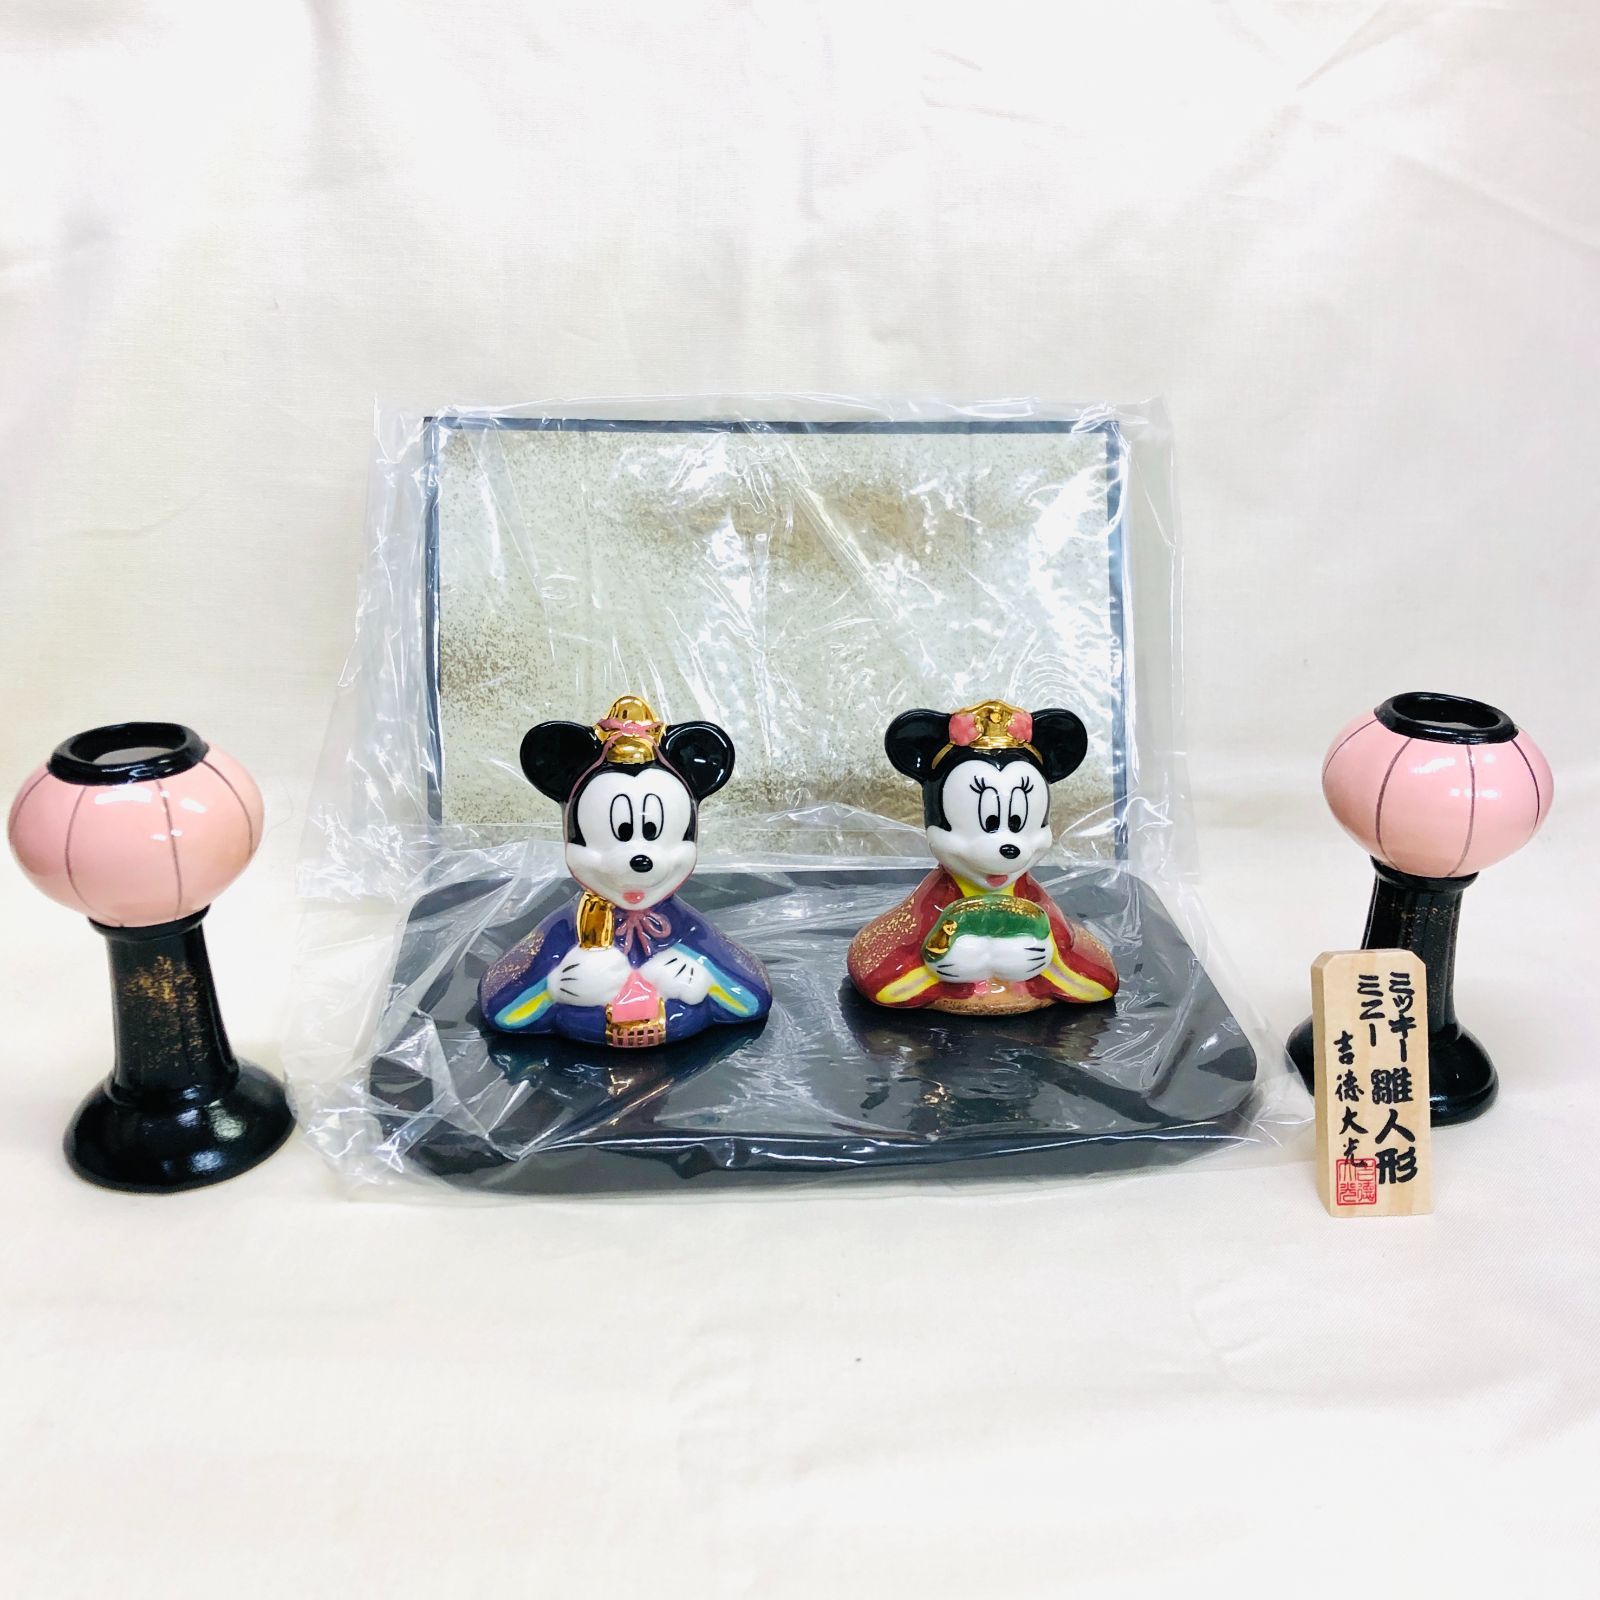 ミッキー & ミニー ミニ雛人形 吉徳 ディズニー 陶器製 台座付 